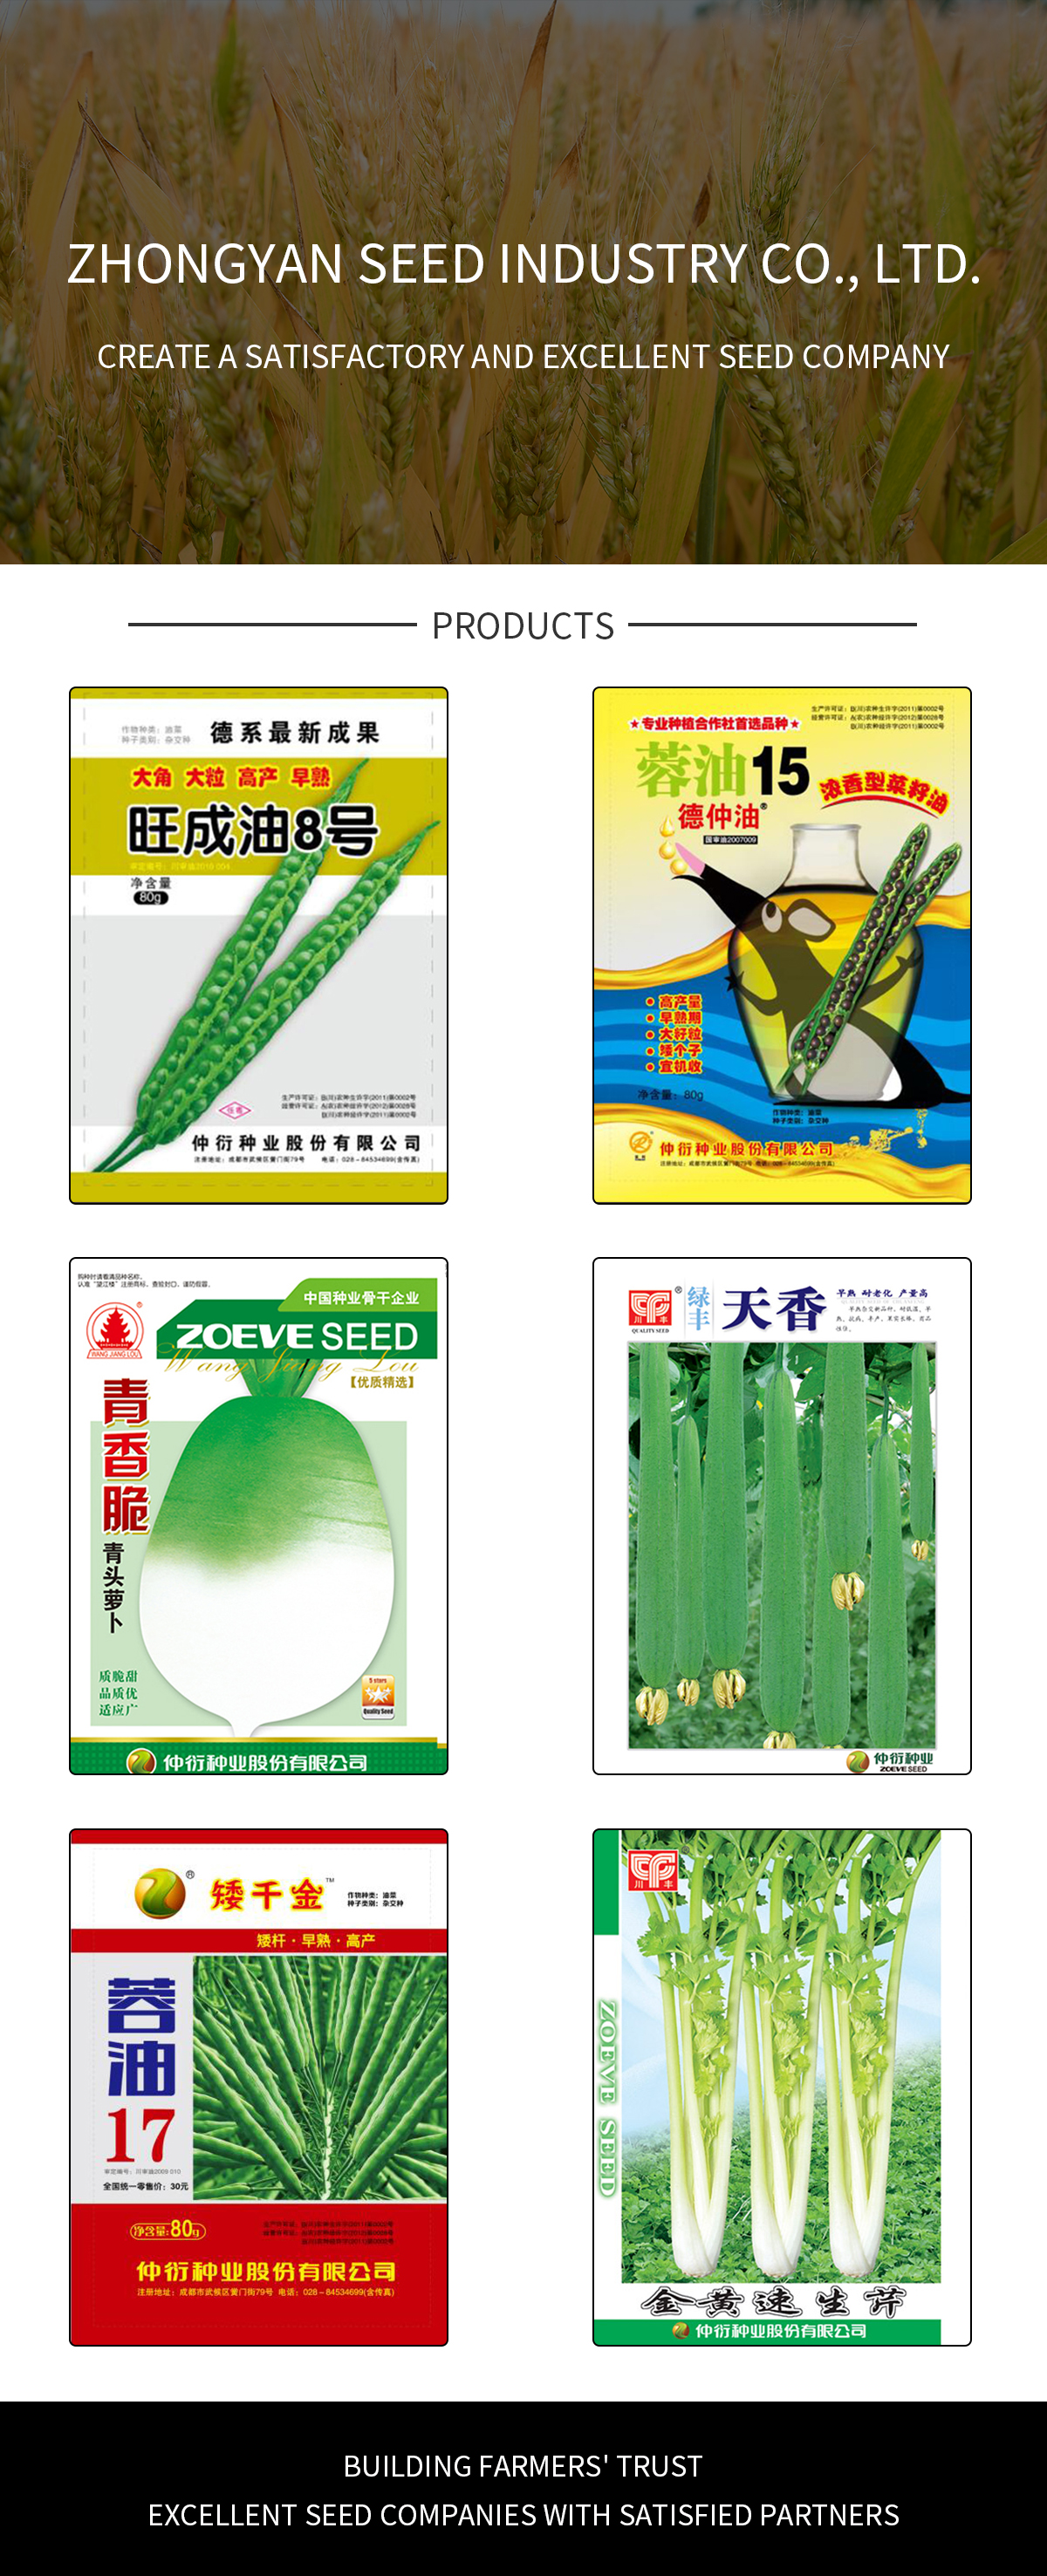 Zhongyan Seed Industry